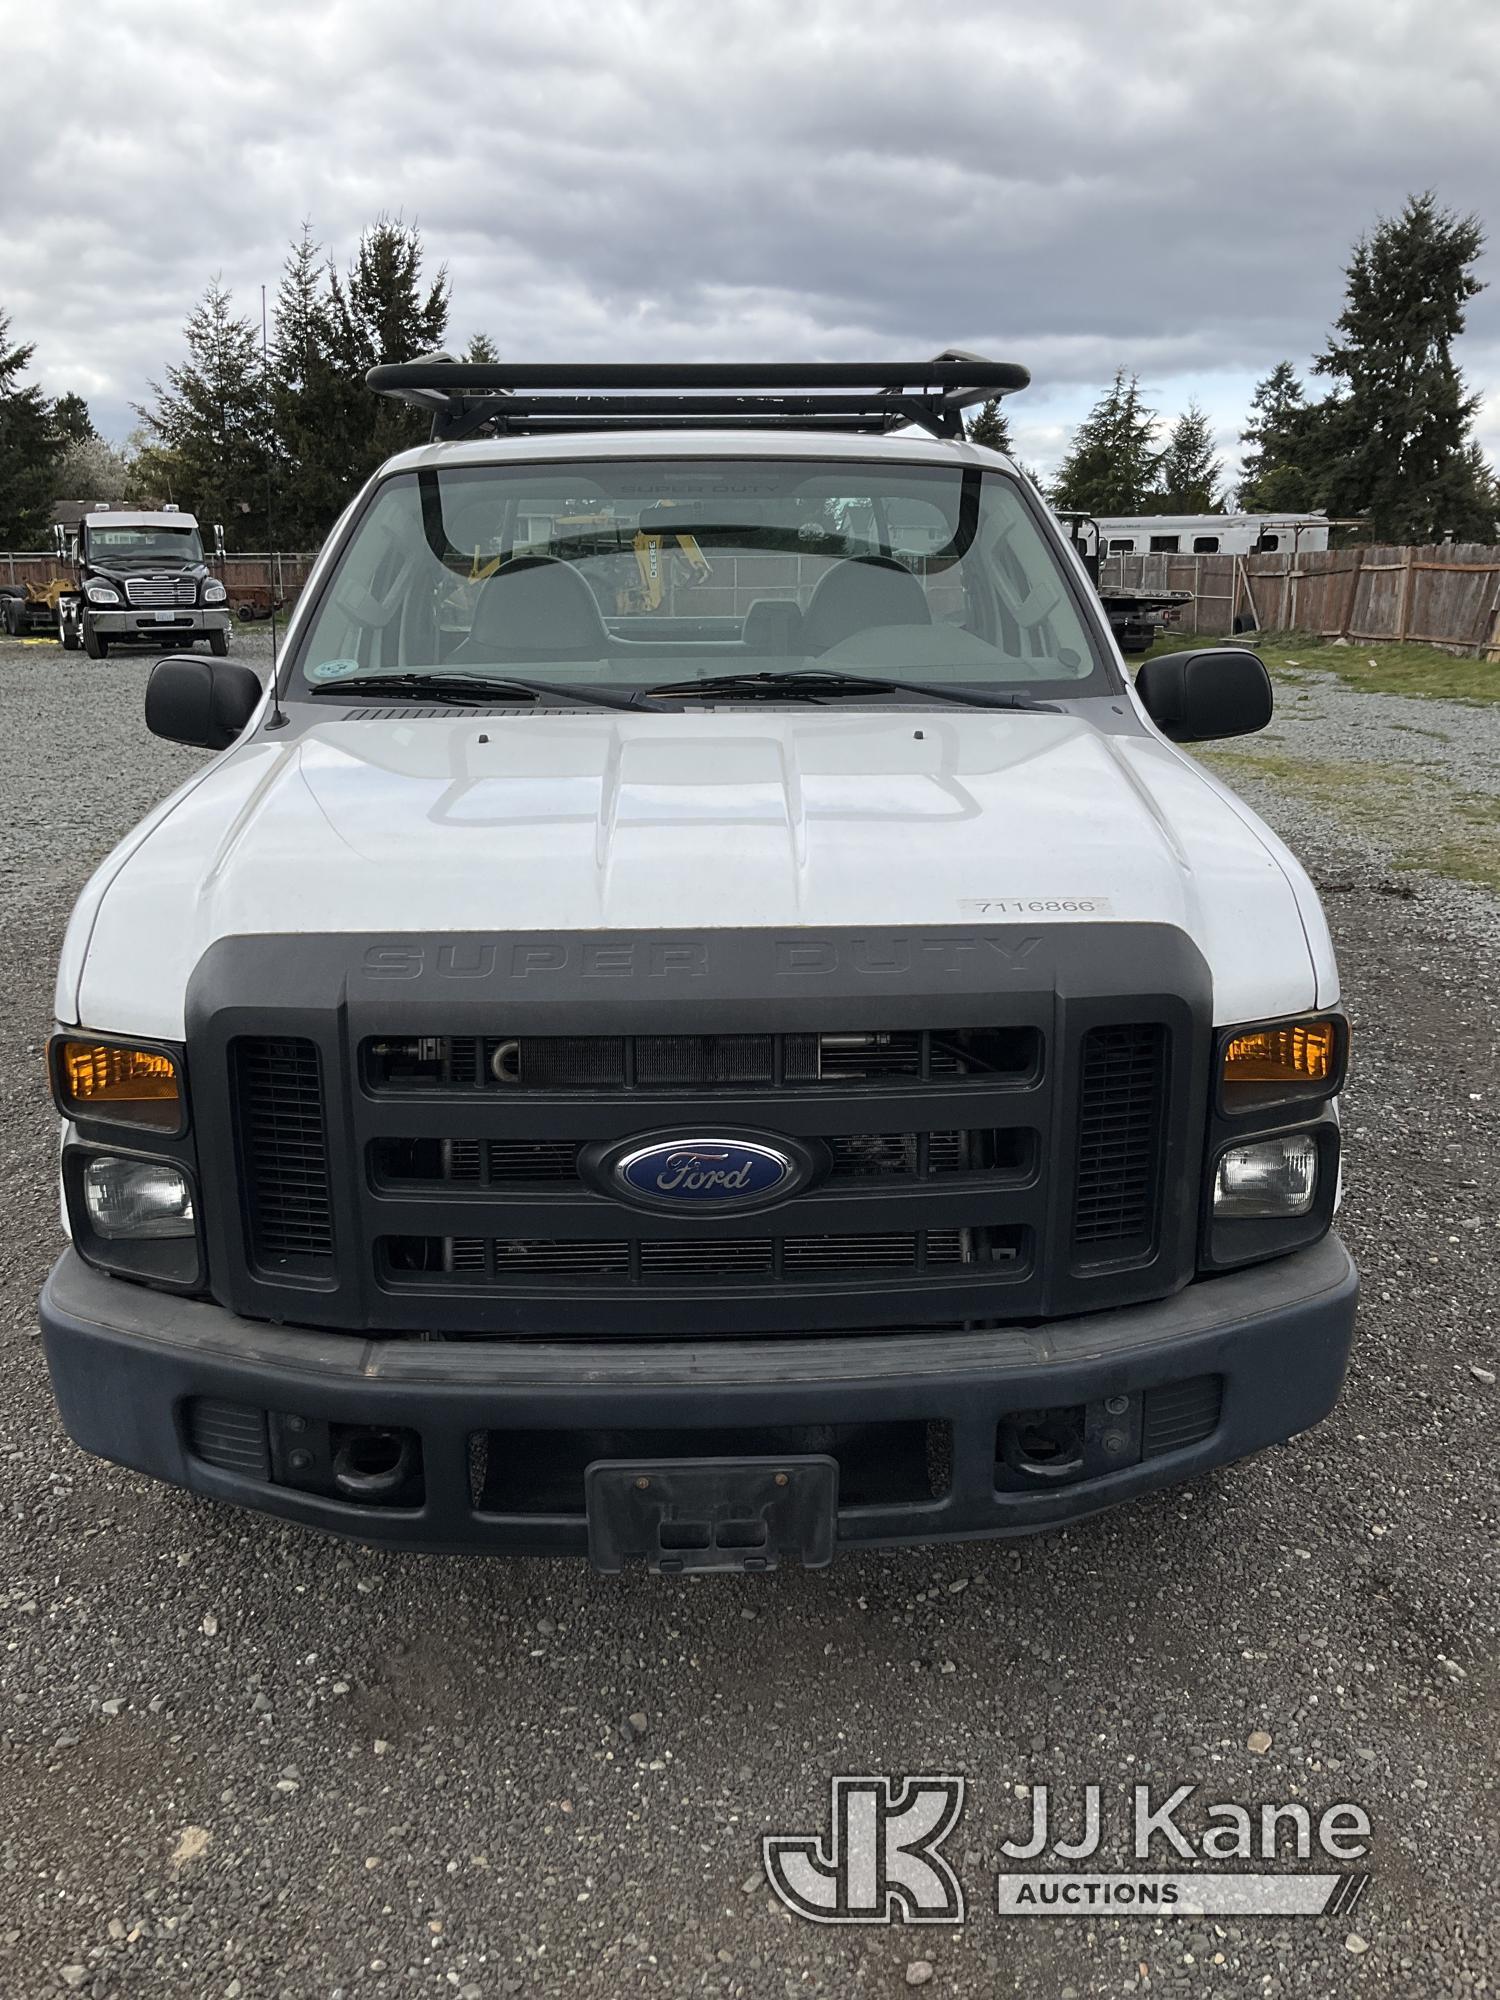 (Tacoma, WA) 2008 Ford F250 Pickup Truck Runs & Moves